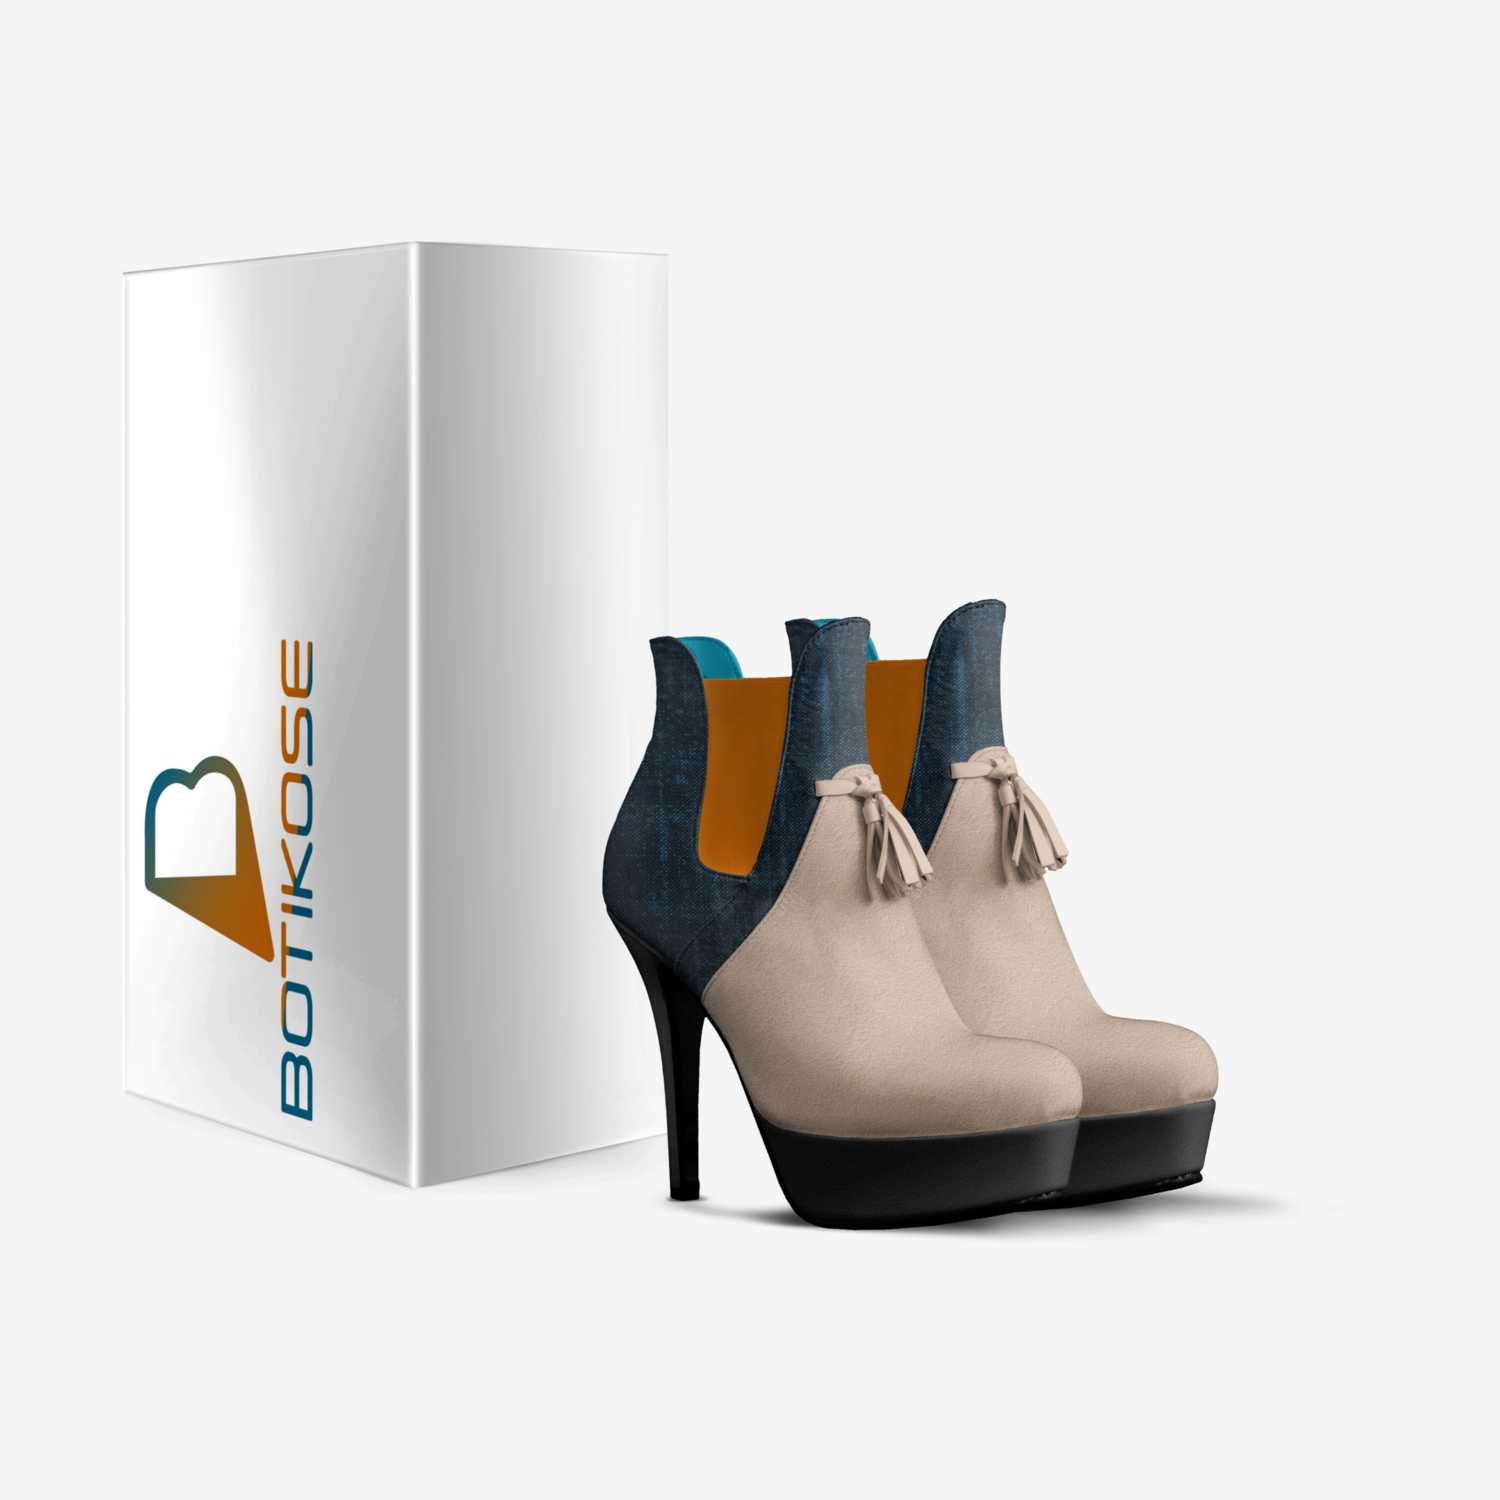 BOTIKOSE custom made in Italy shoes by Armando Daza | Box view